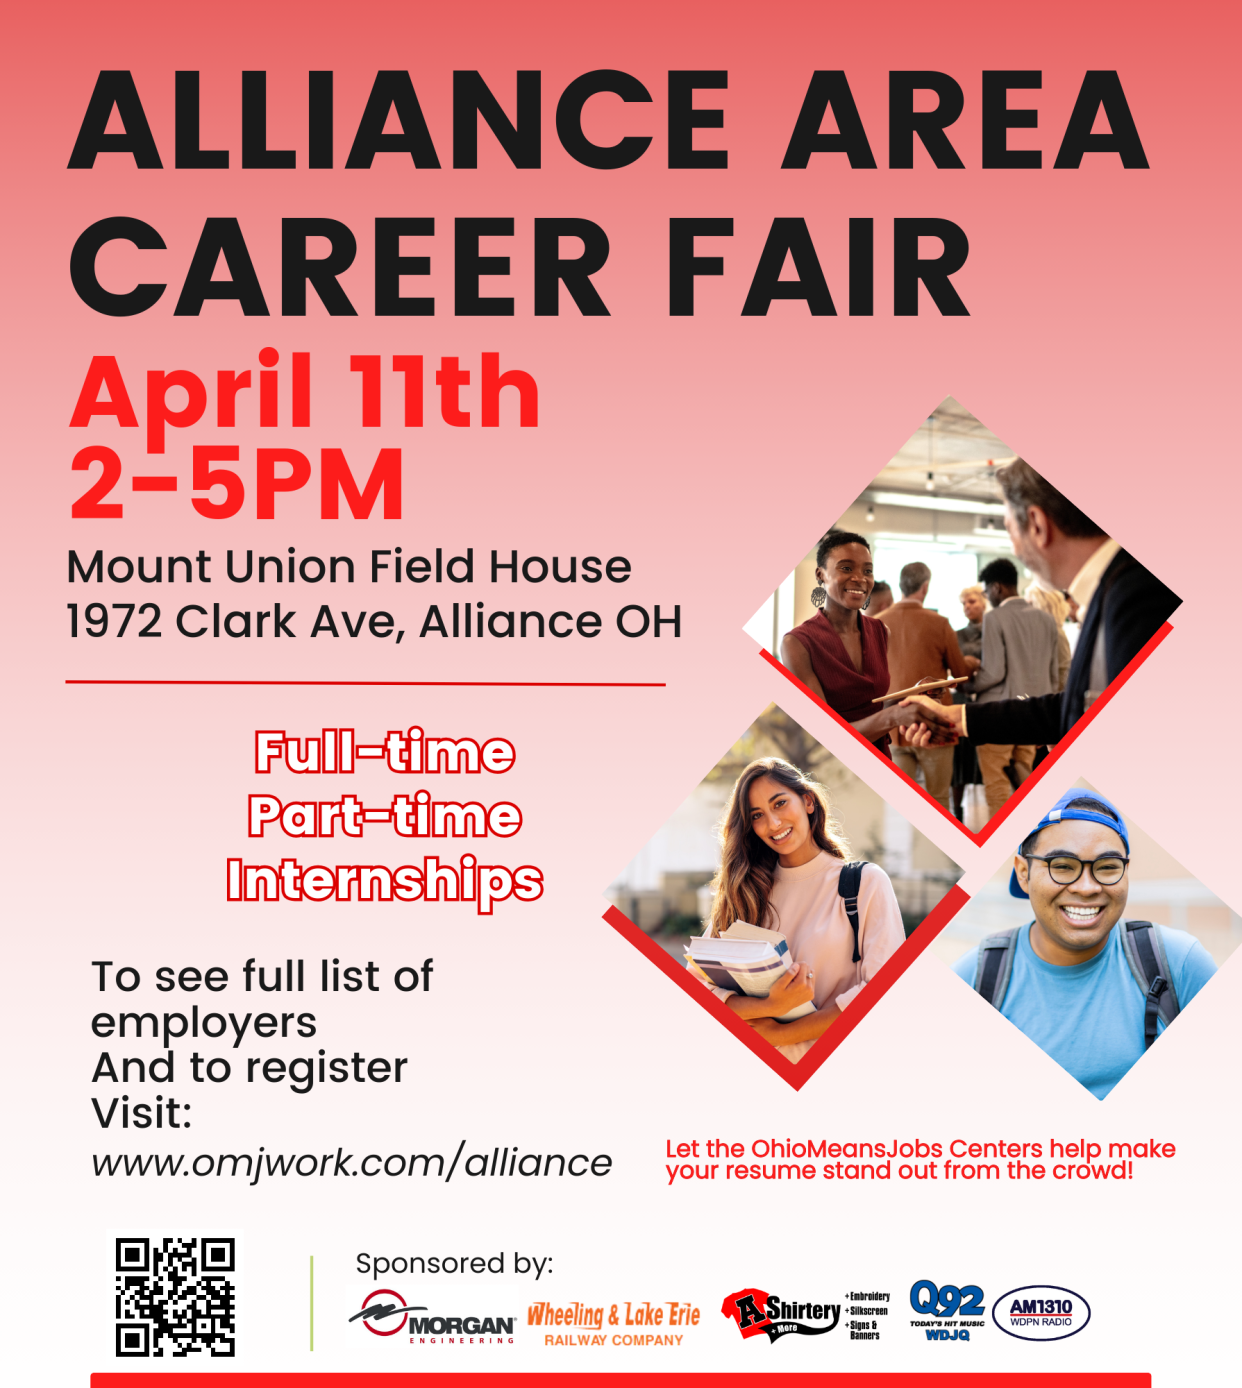 Alliance Area Career Fair flyer